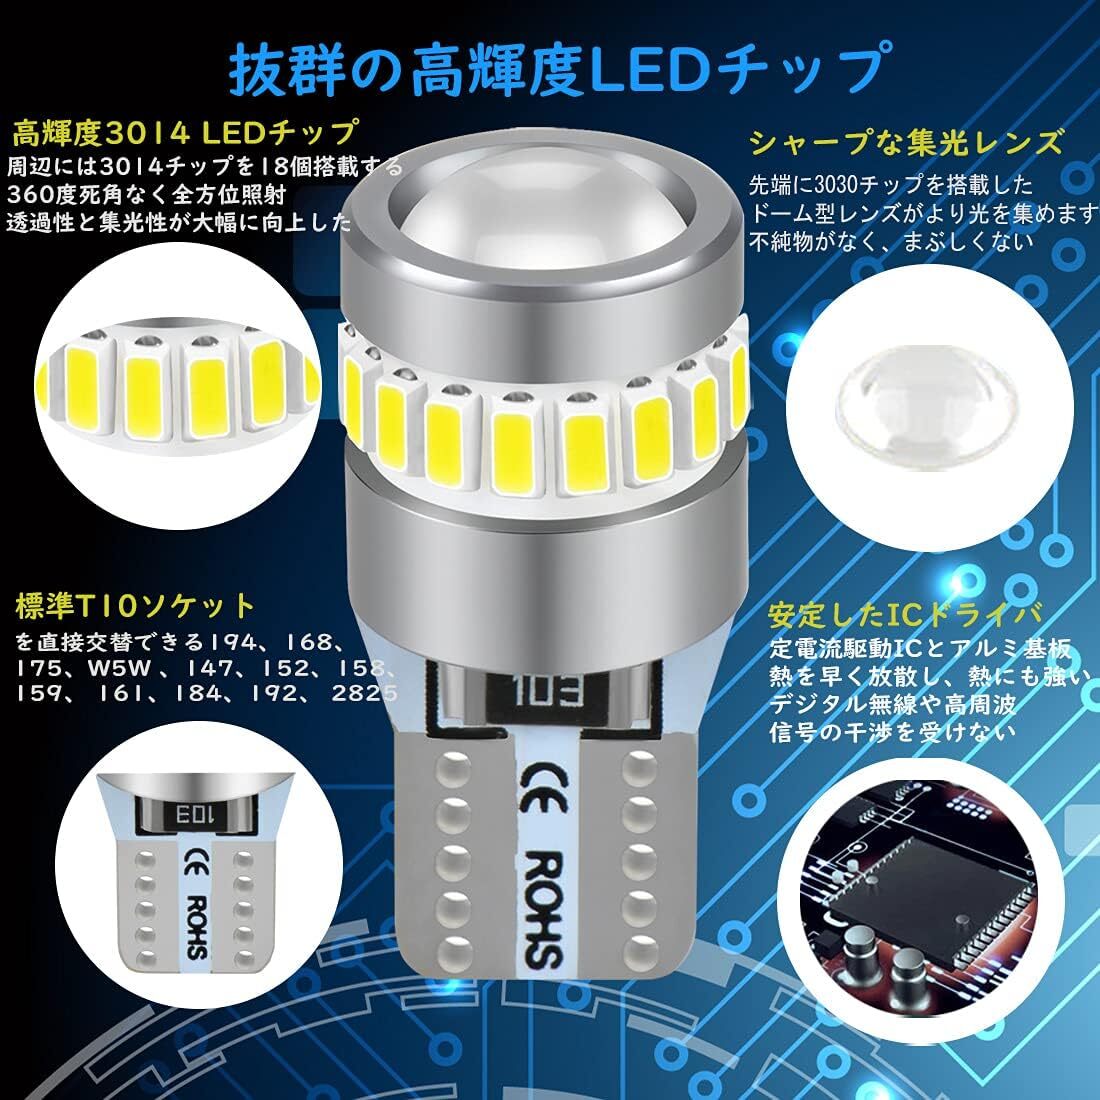 T10 led ホワイト 爆光 最新型レンズ集光 無極性 ポジションランプ 19個のLEDチップ搭載 360°無死角照射 DC 1の画像2